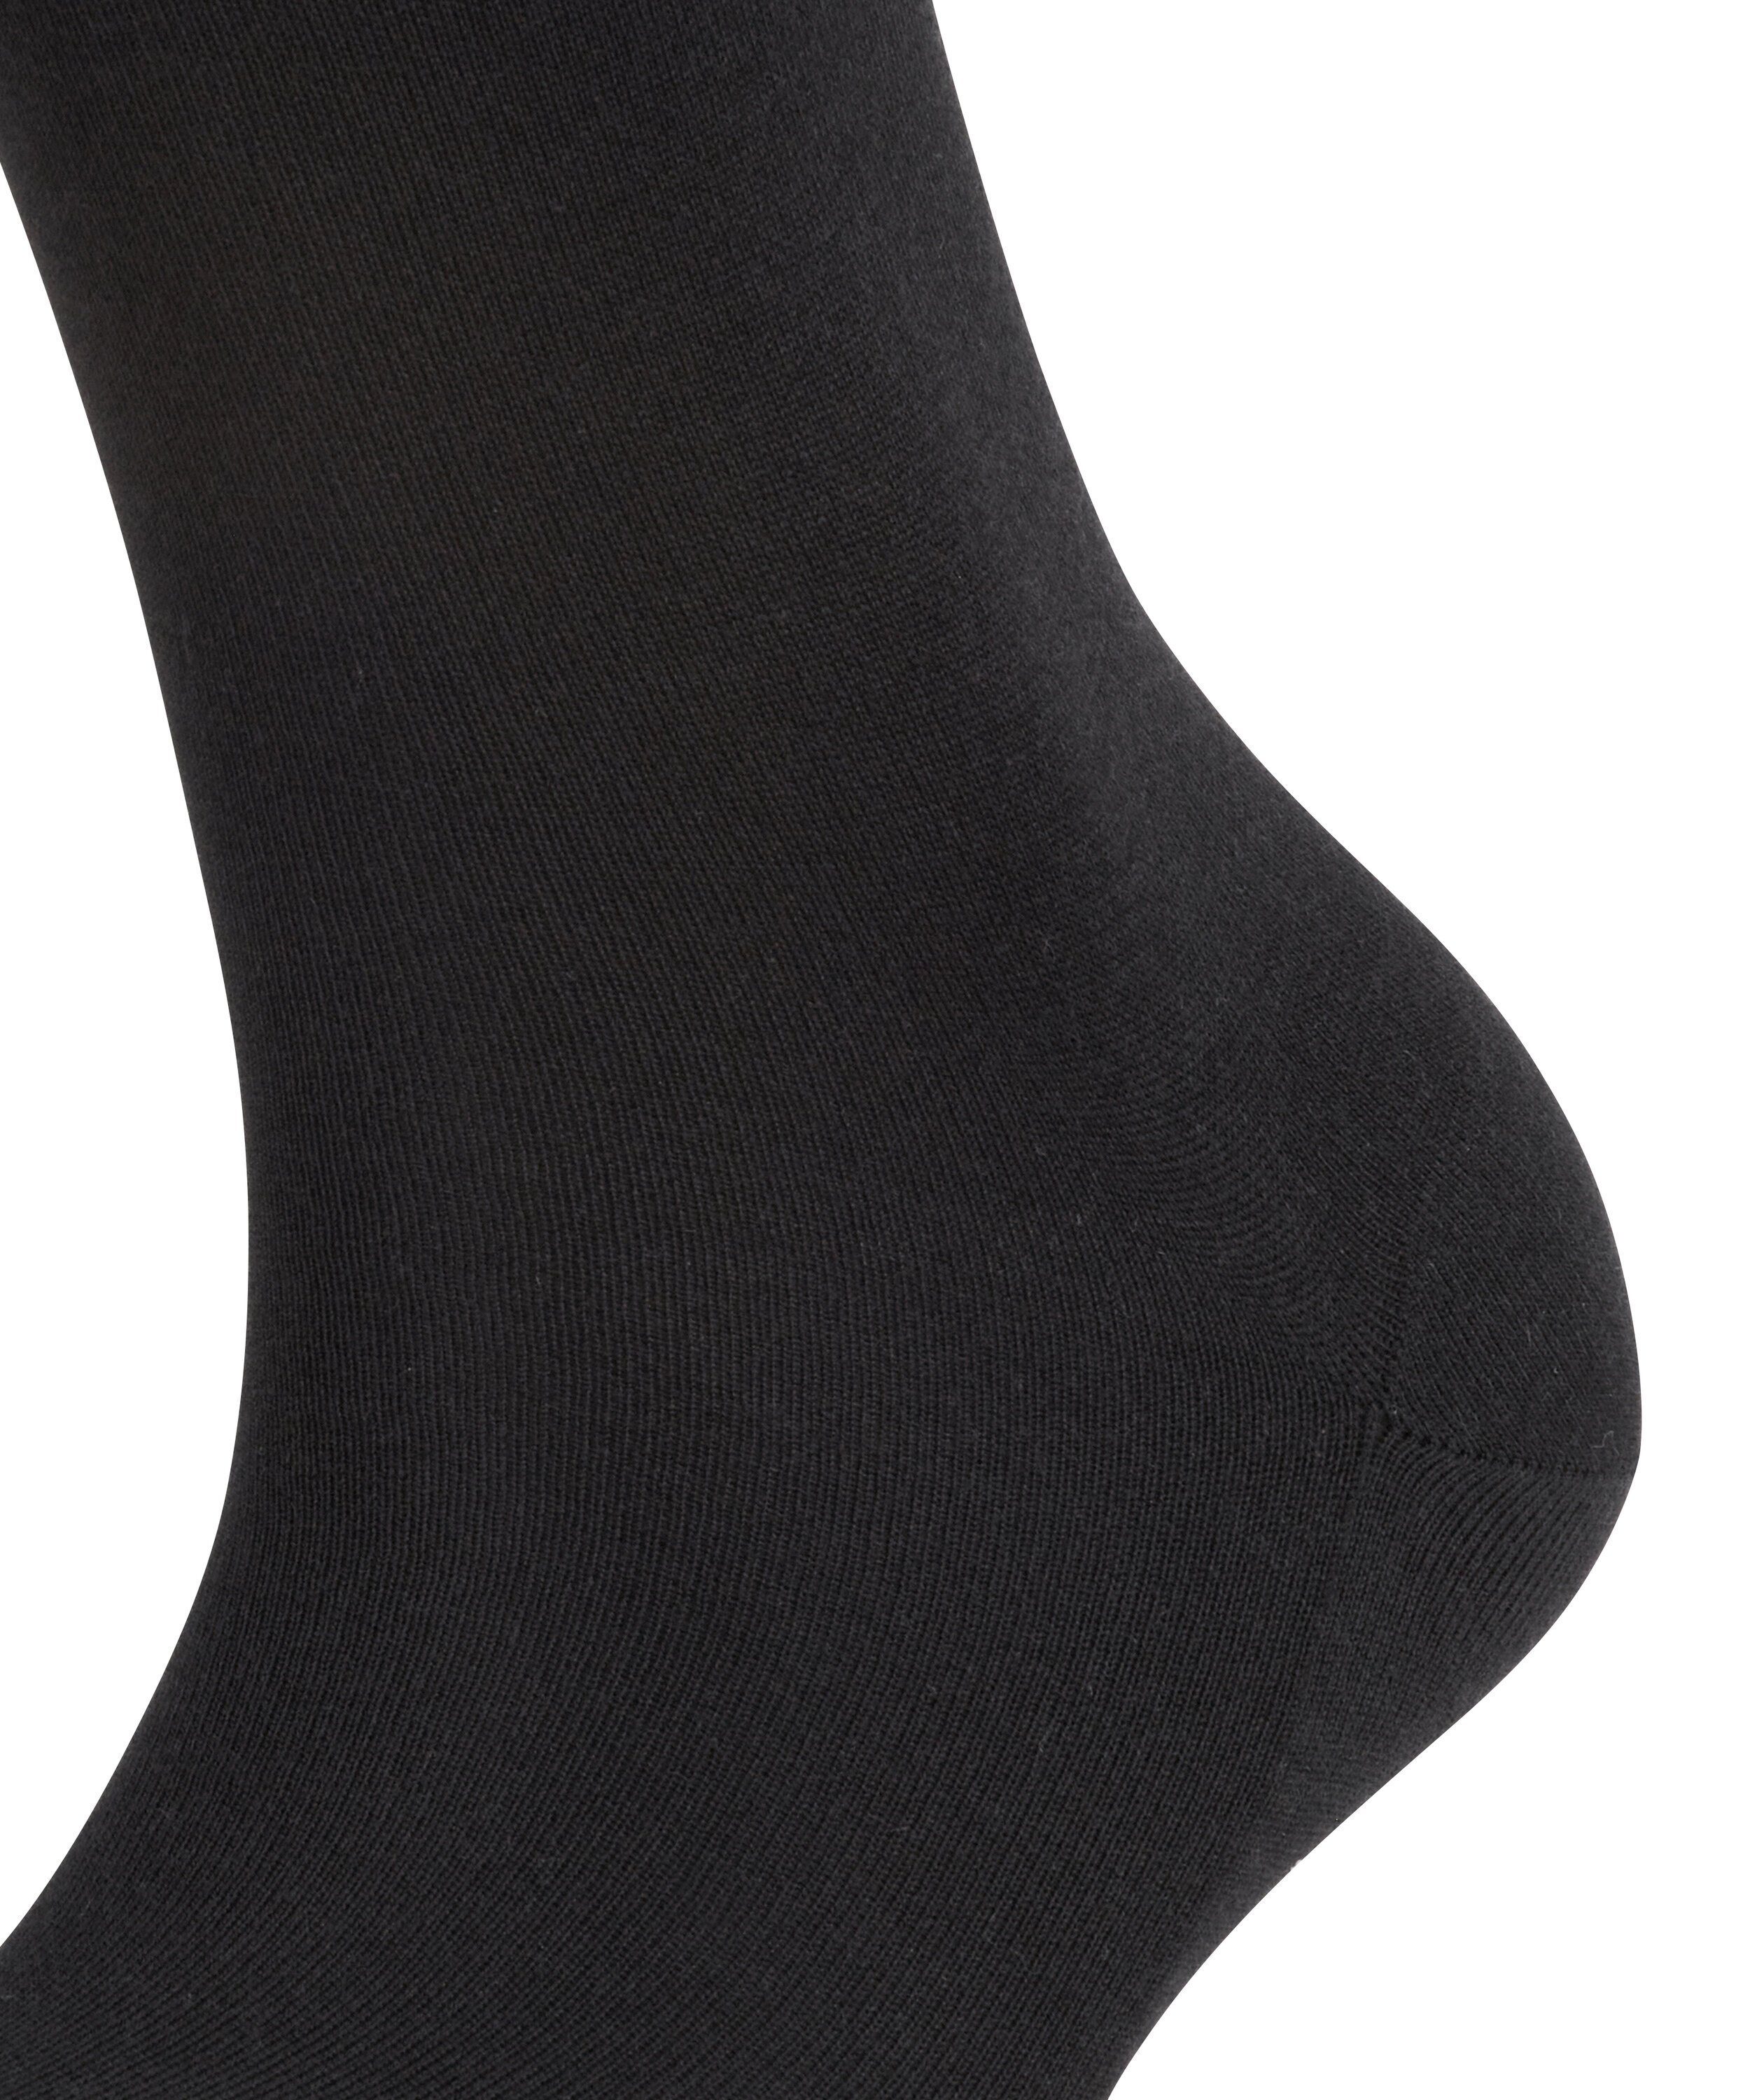 (3009) FALKE Sensual Silk black Socken (1-Paar)